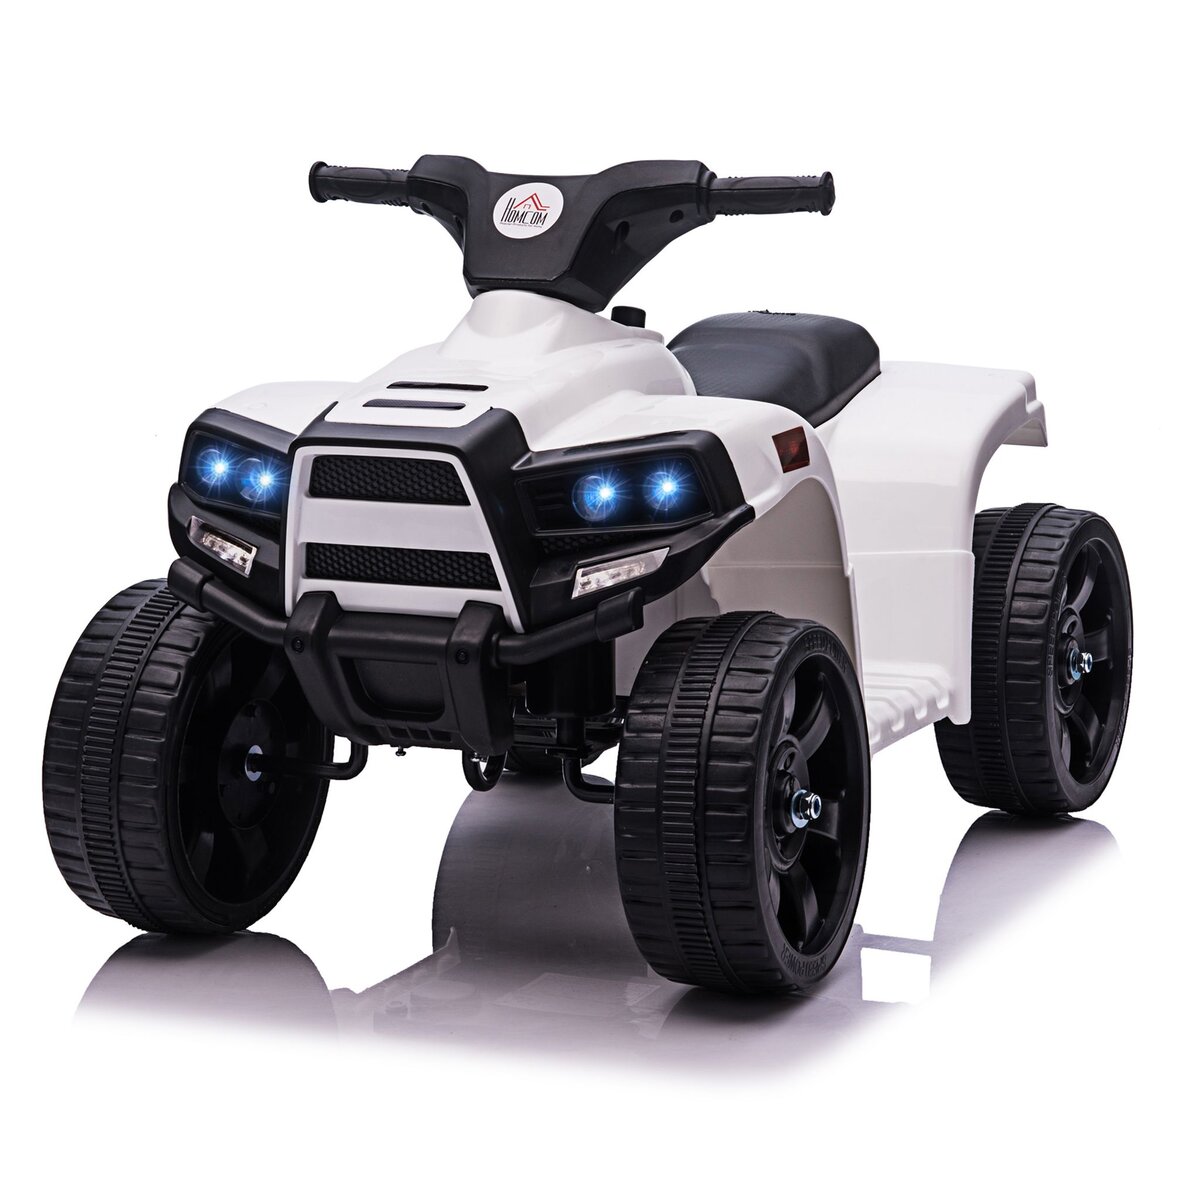 HOMCOM Voiture 4x4 quad buggy électrique enfant 18-36 mois 6 V 3 Km/h max.  effet lumineux sonores métal PP blanc noir pas cher 